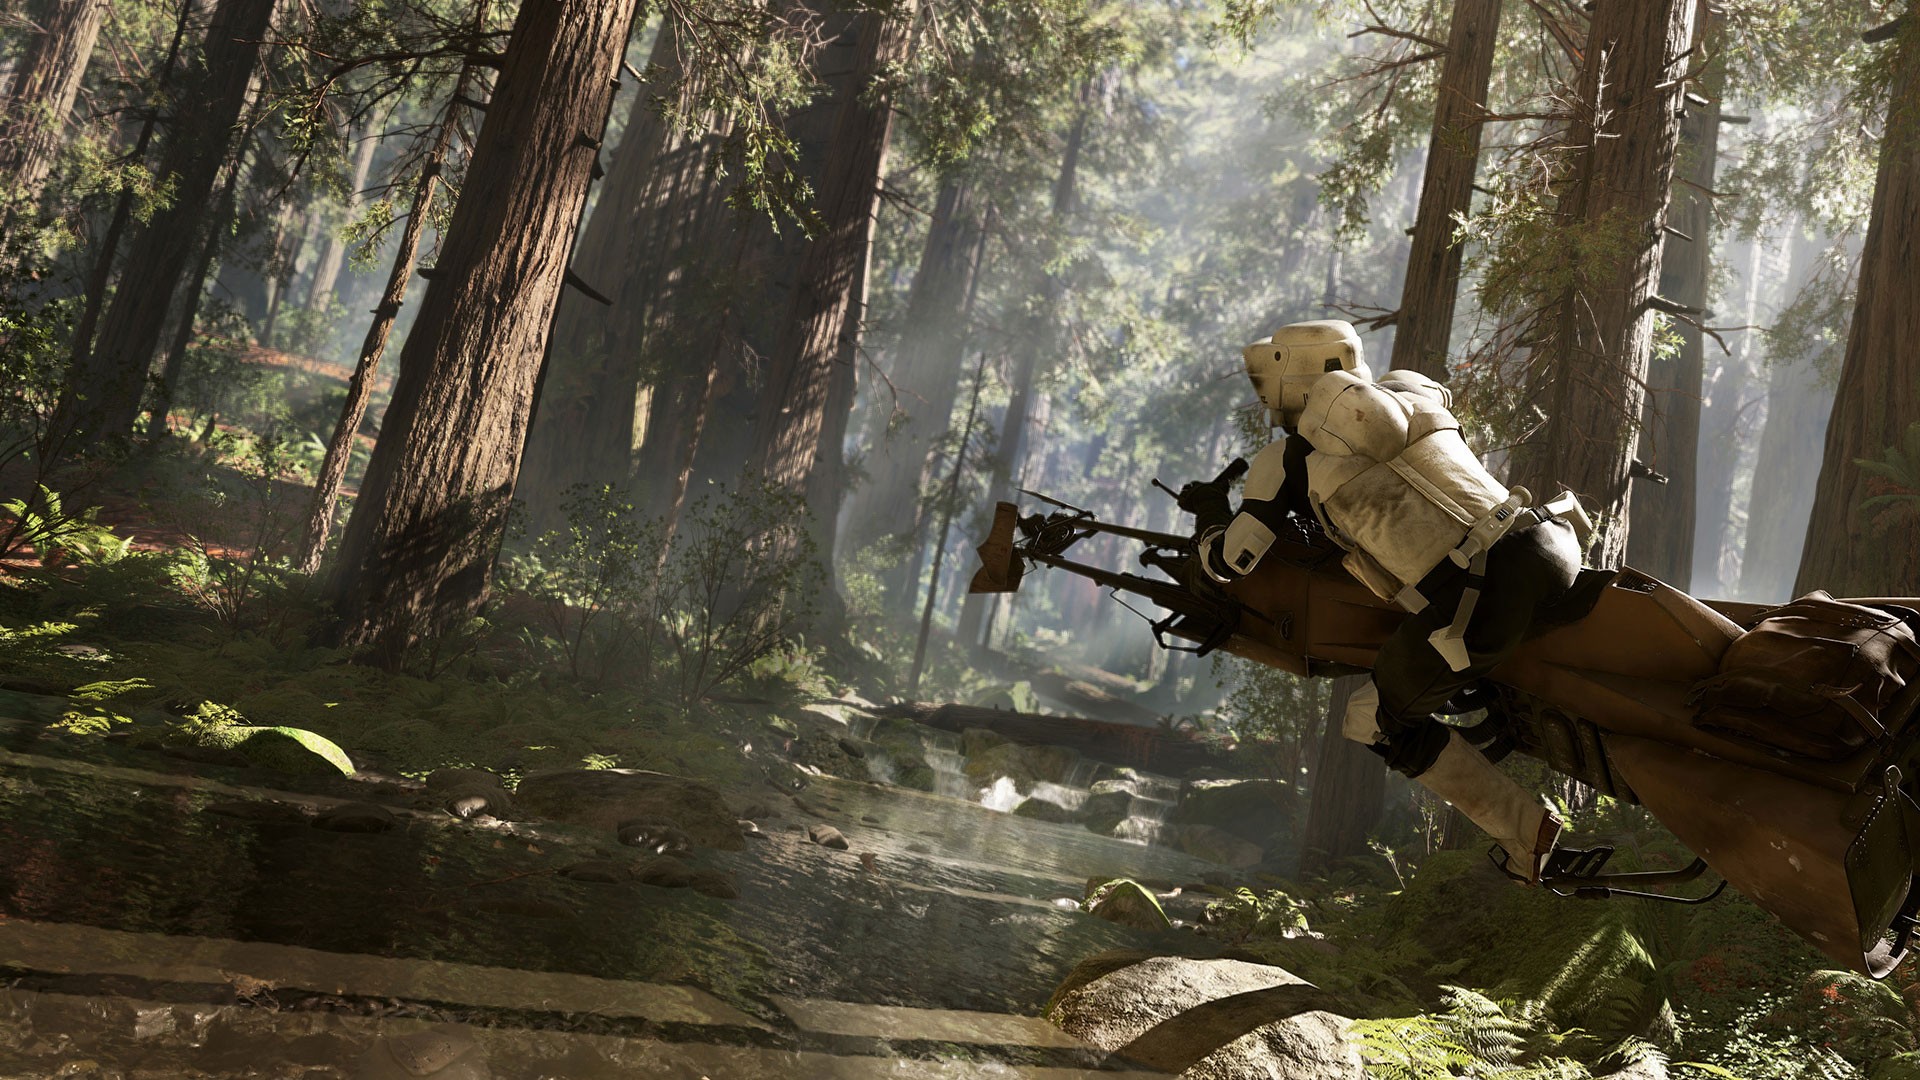 Speeder Bike Scout Trooper Endor Star Wars Battlefront Star Wars EA Games Video Games Screen Shot 1920x1080